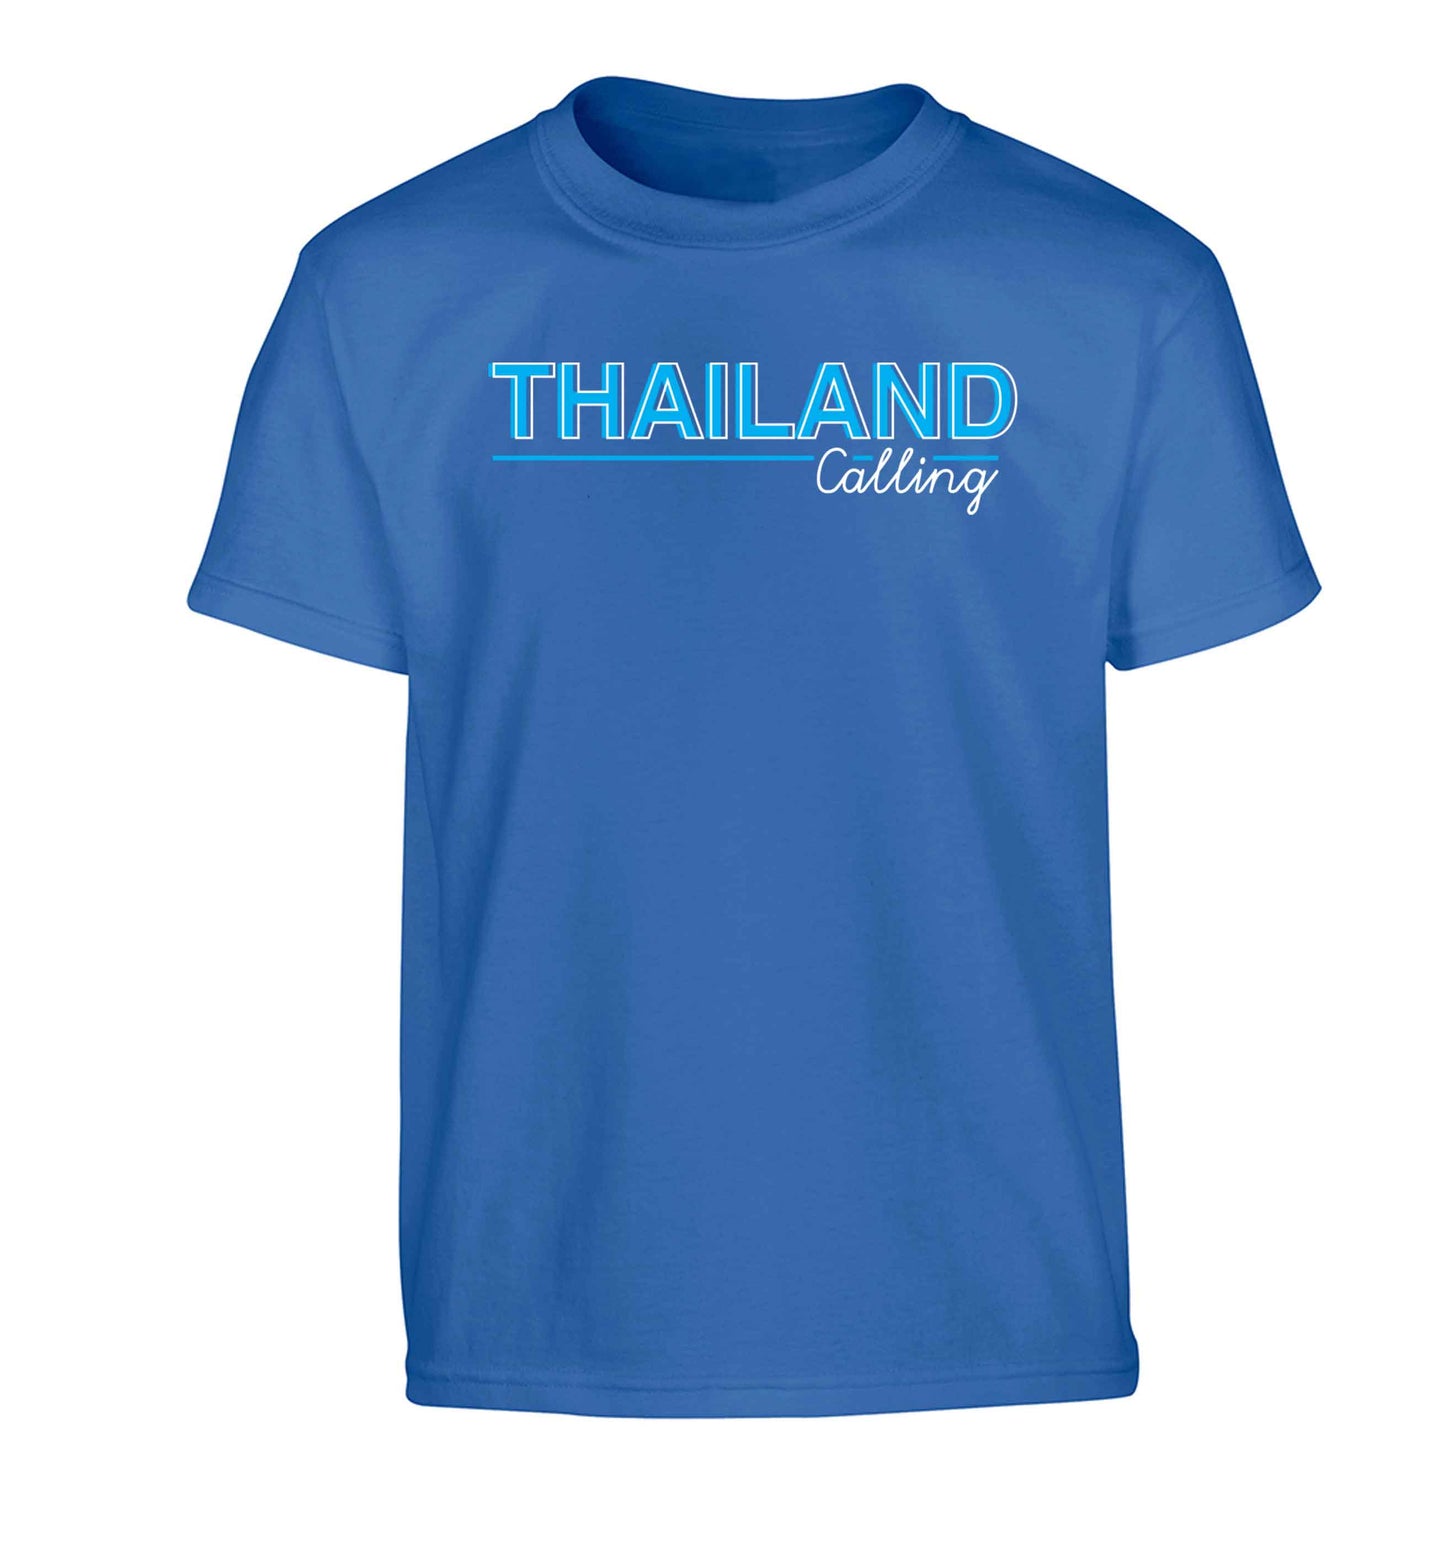 Thailand calling Children's blue Tshirt 12-13 Years